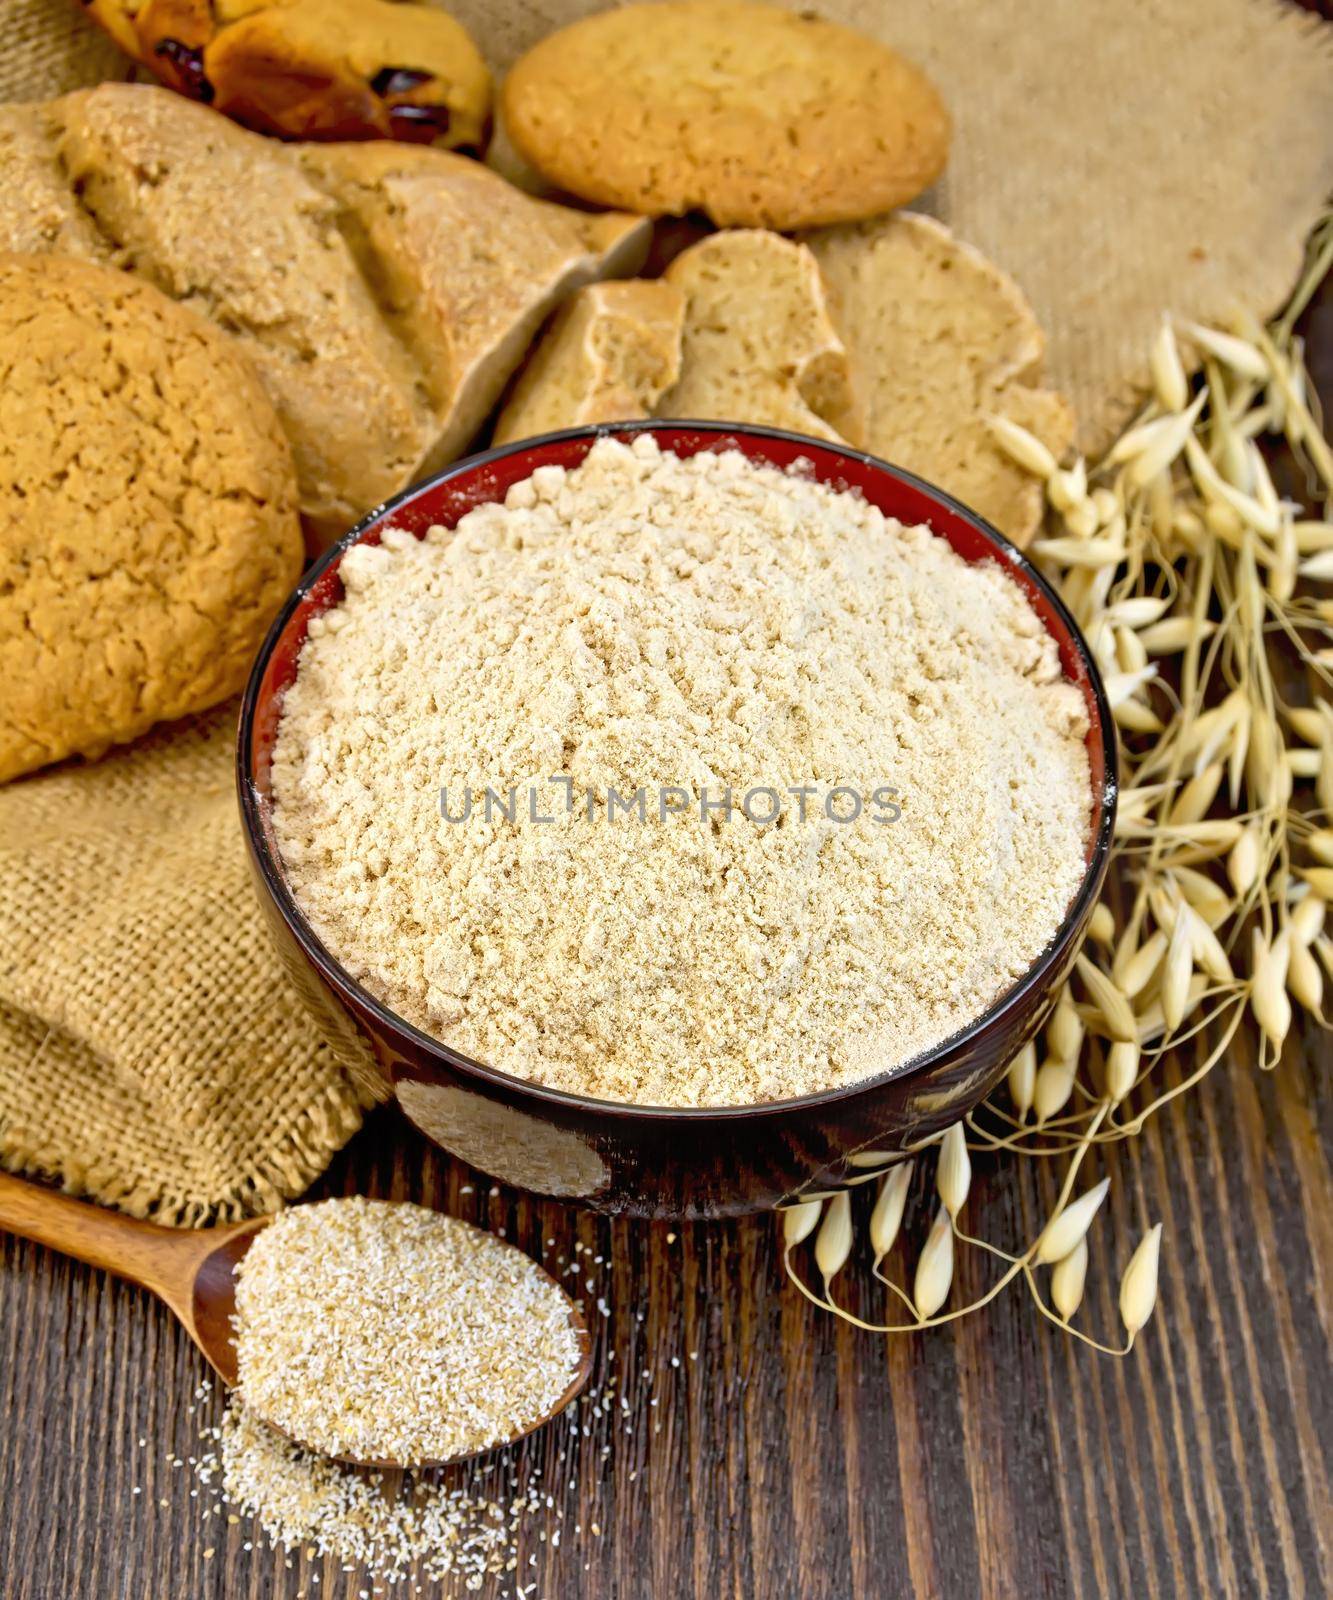 Flour oat in bowl with bread on board by rezkrr